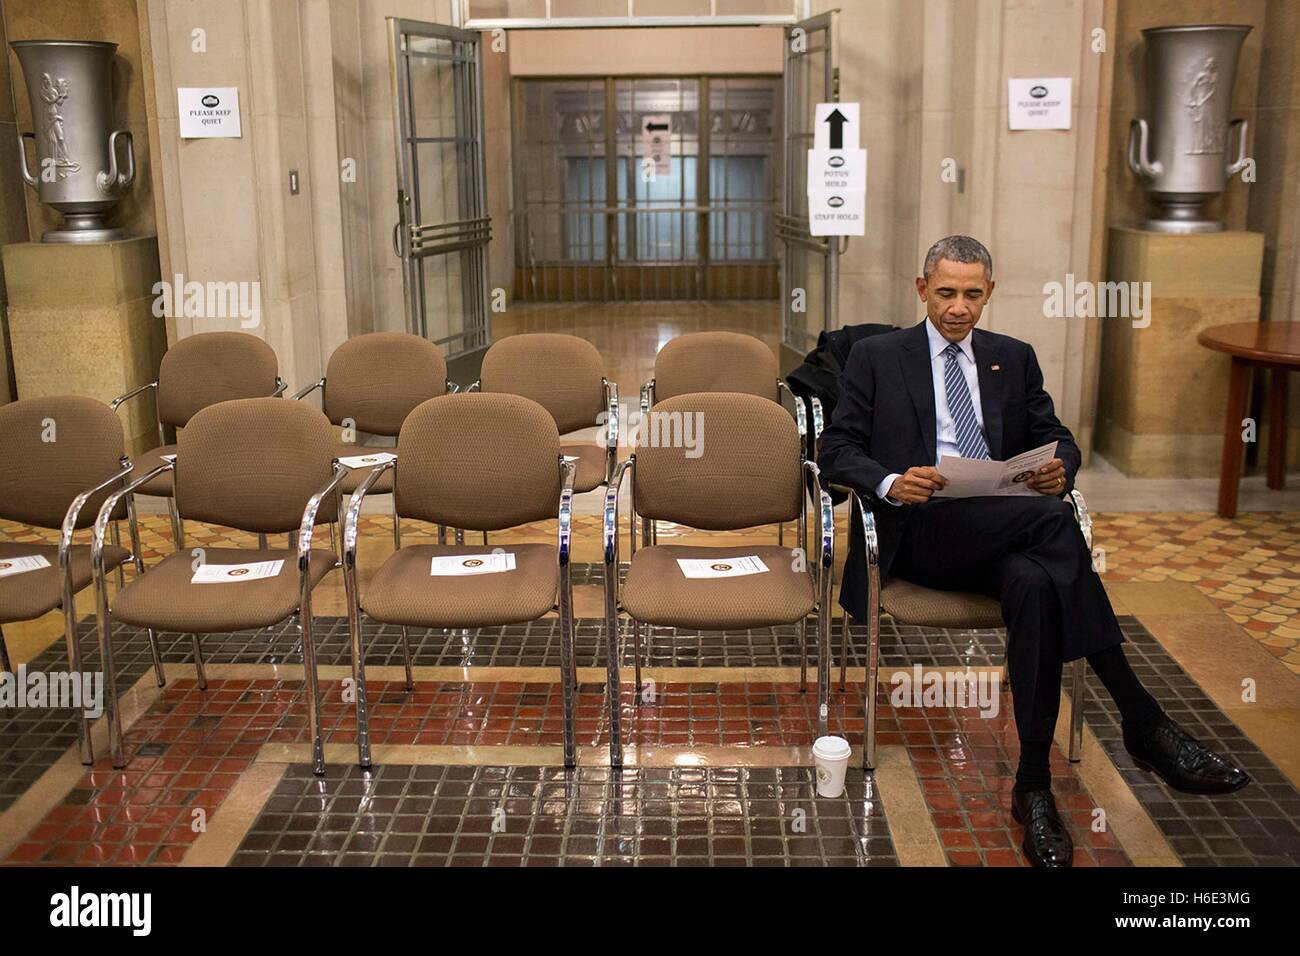 US-Präsident Barack Obama liest eine Programm vor dem Porträt Enthüllung für Generalstaatsanwalt Eric Holder, Jr. im U.S. Department of Justice 27. Februar 2015 in Washington, DC. Stockfoto